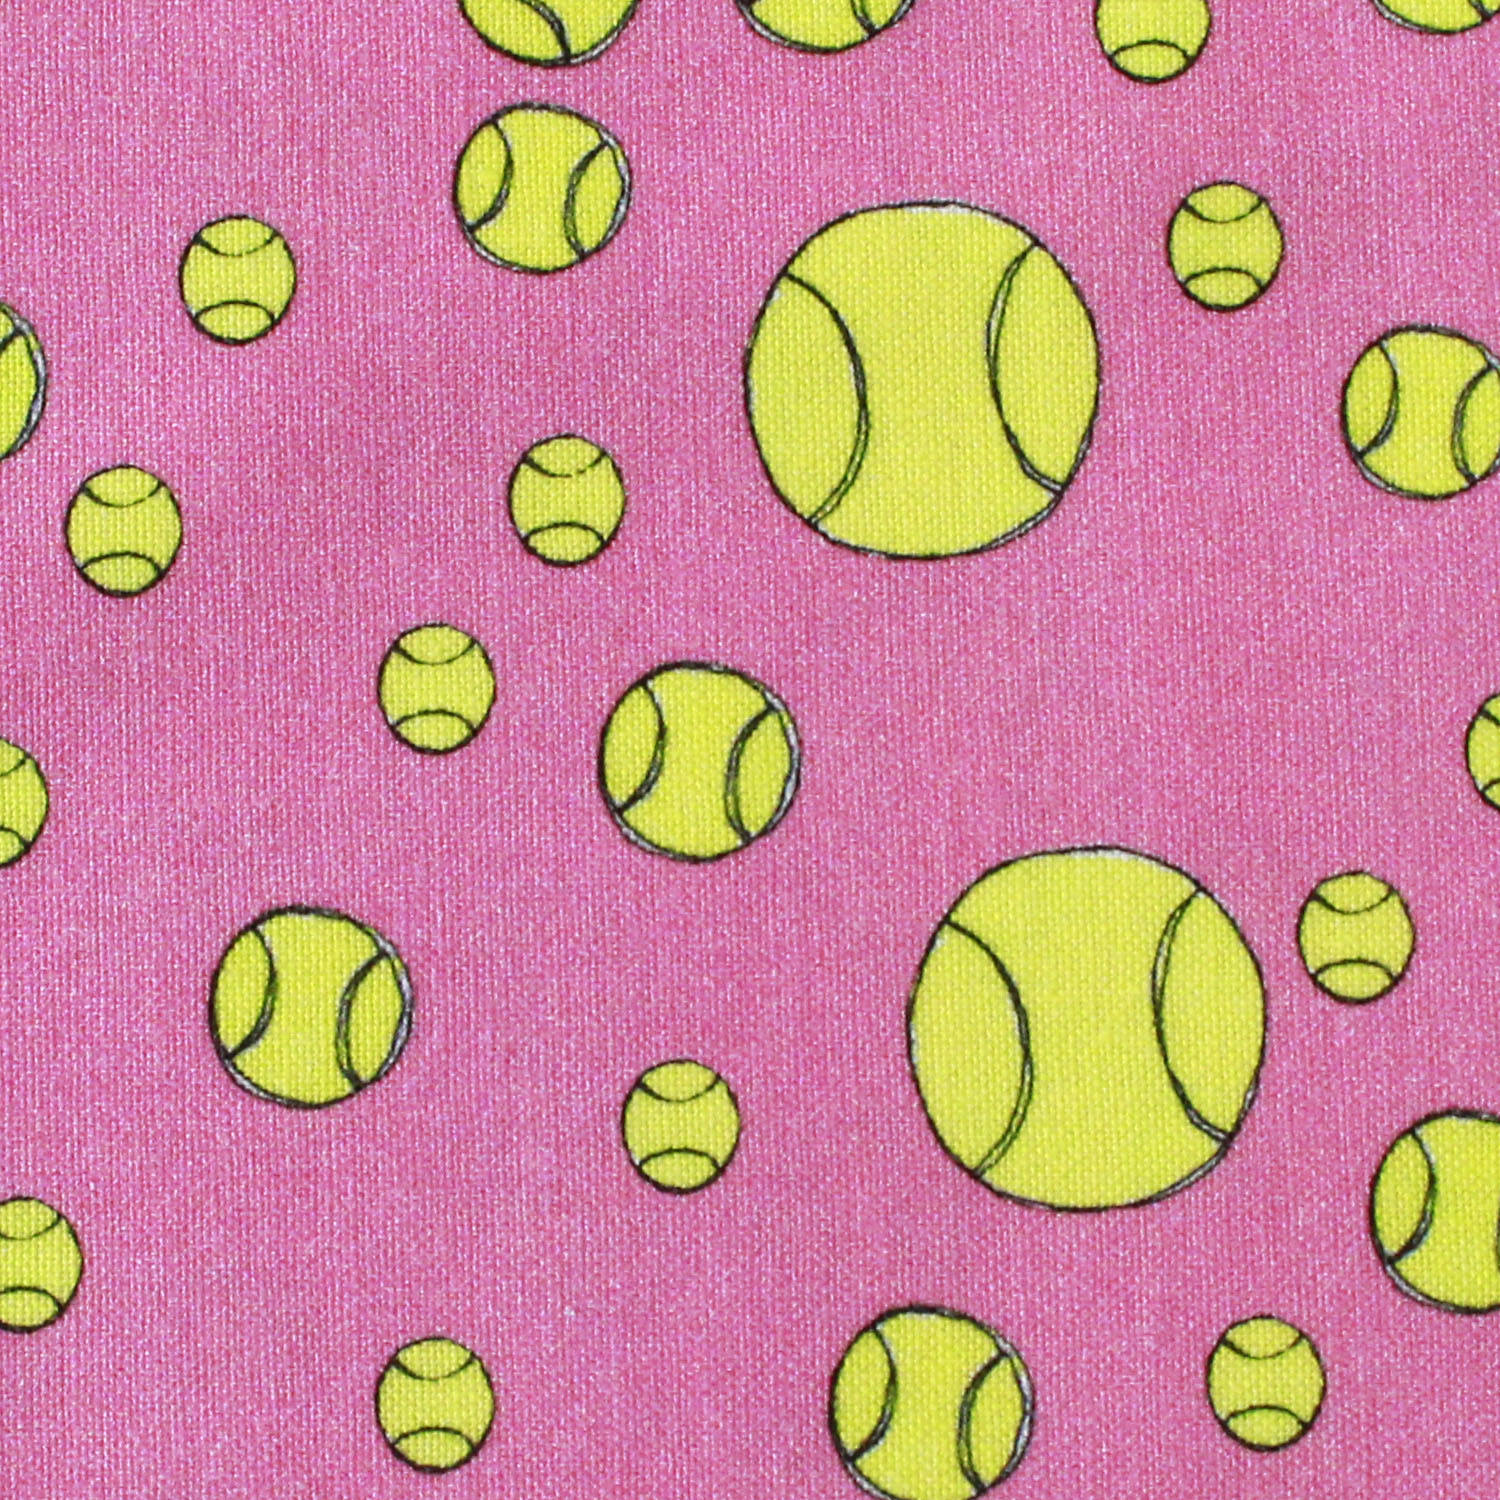 【1/11入荷】LORA692-512 Loralie Designs ピンク地テニスボール USAプリント生地 1m単位 (m)